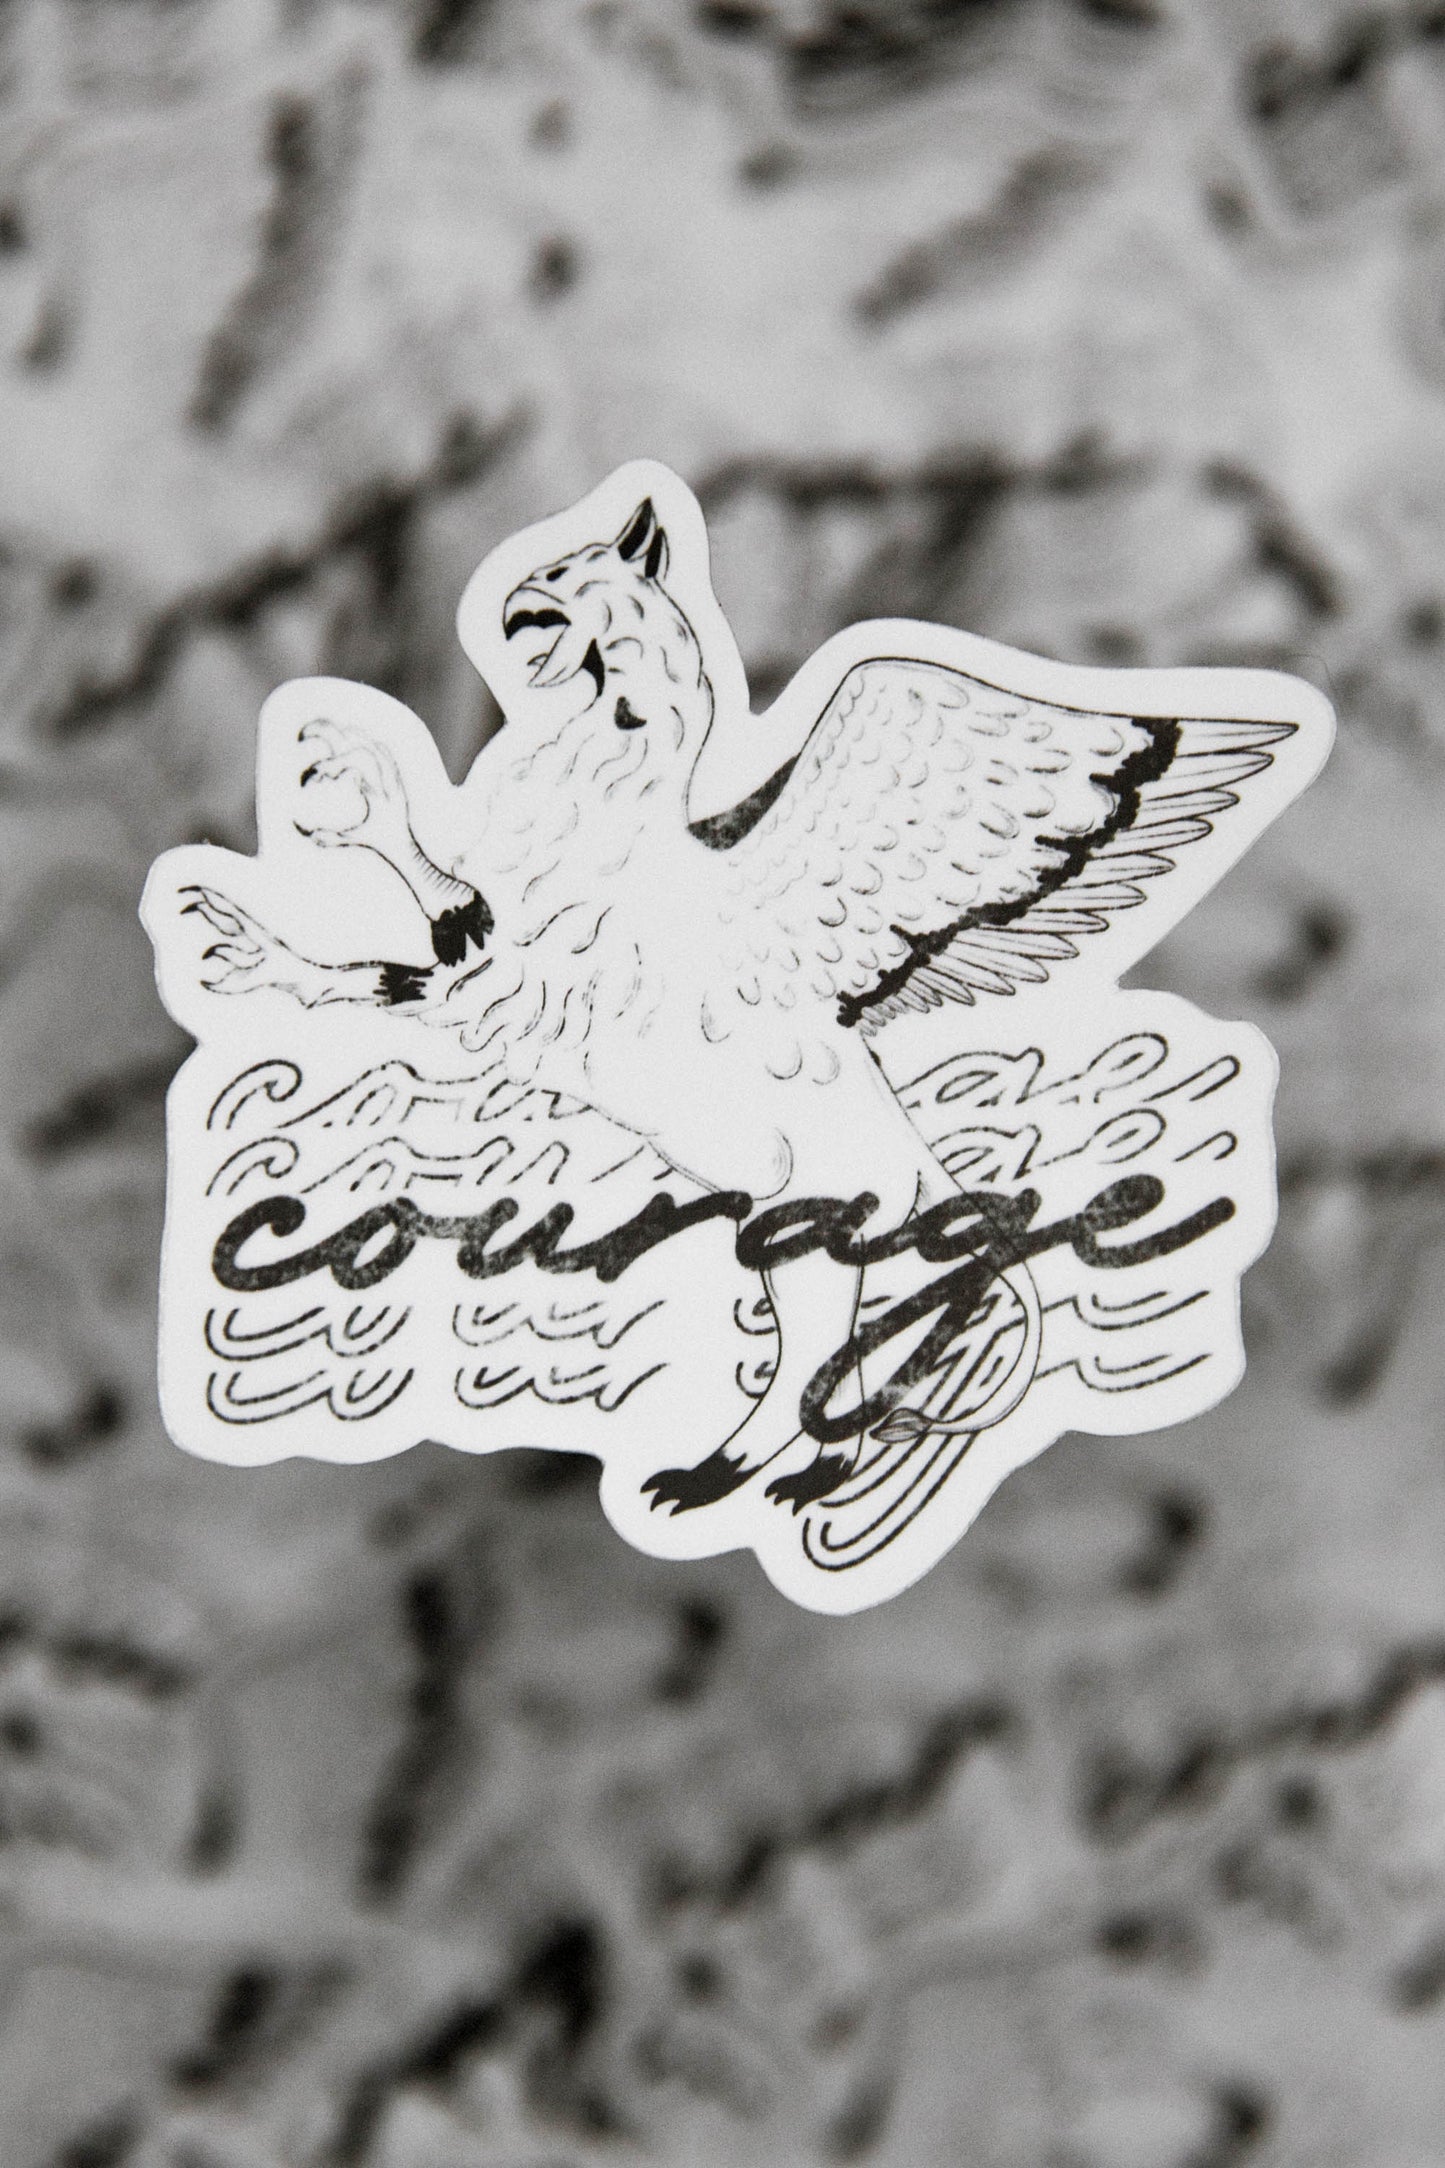 Courage Sticker